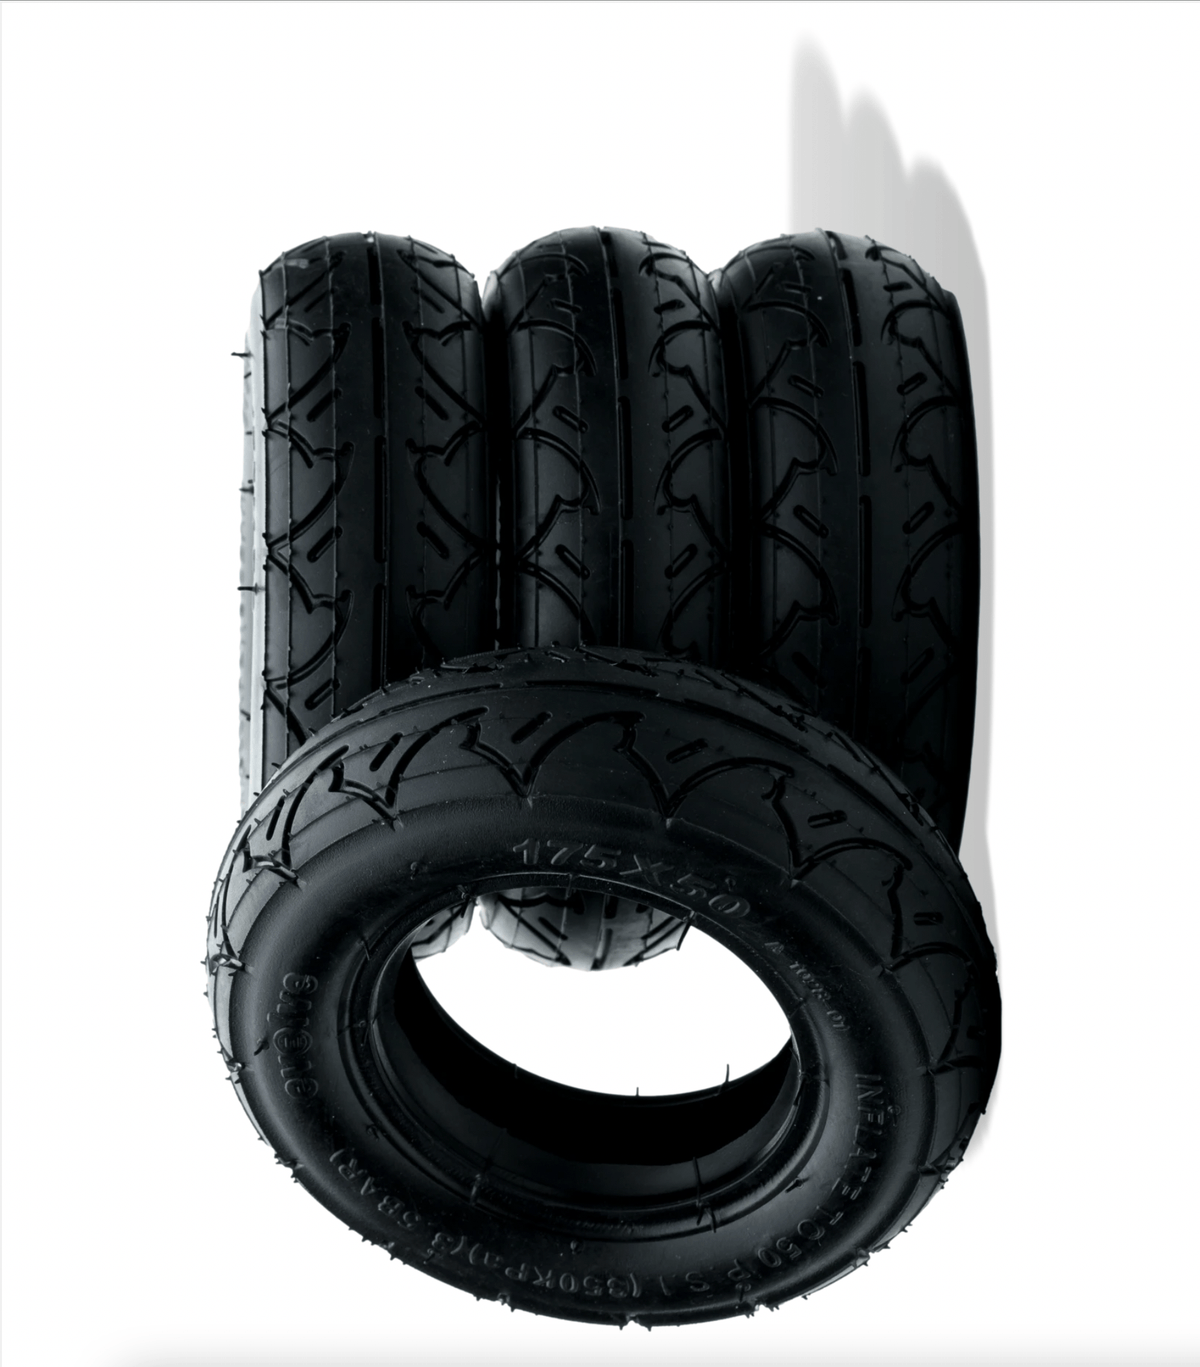 Evolve All Terrain Tire (175 / 7 inch) Single